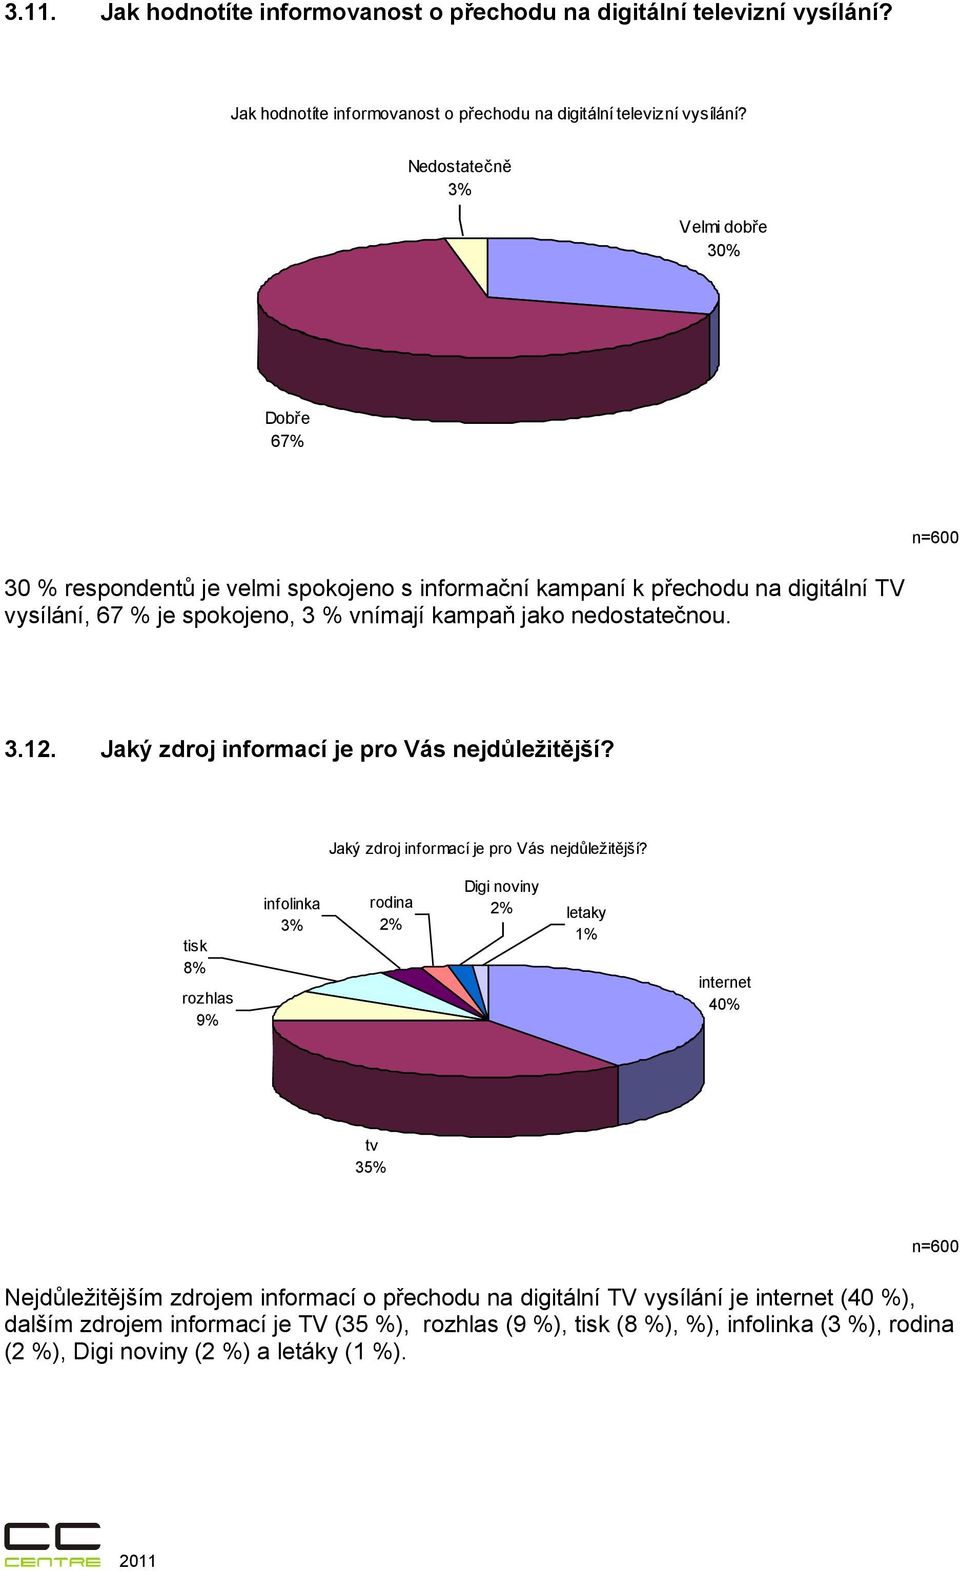 Nedostatečně 3% Velmi dobře 30% Dobře 67% n=600 30 % respondentů je velmi spokojeno s informační kampaní k přechodu na digitální TV vysílání, 67 % je spokojeno, 3 % vnímají kampaň jako